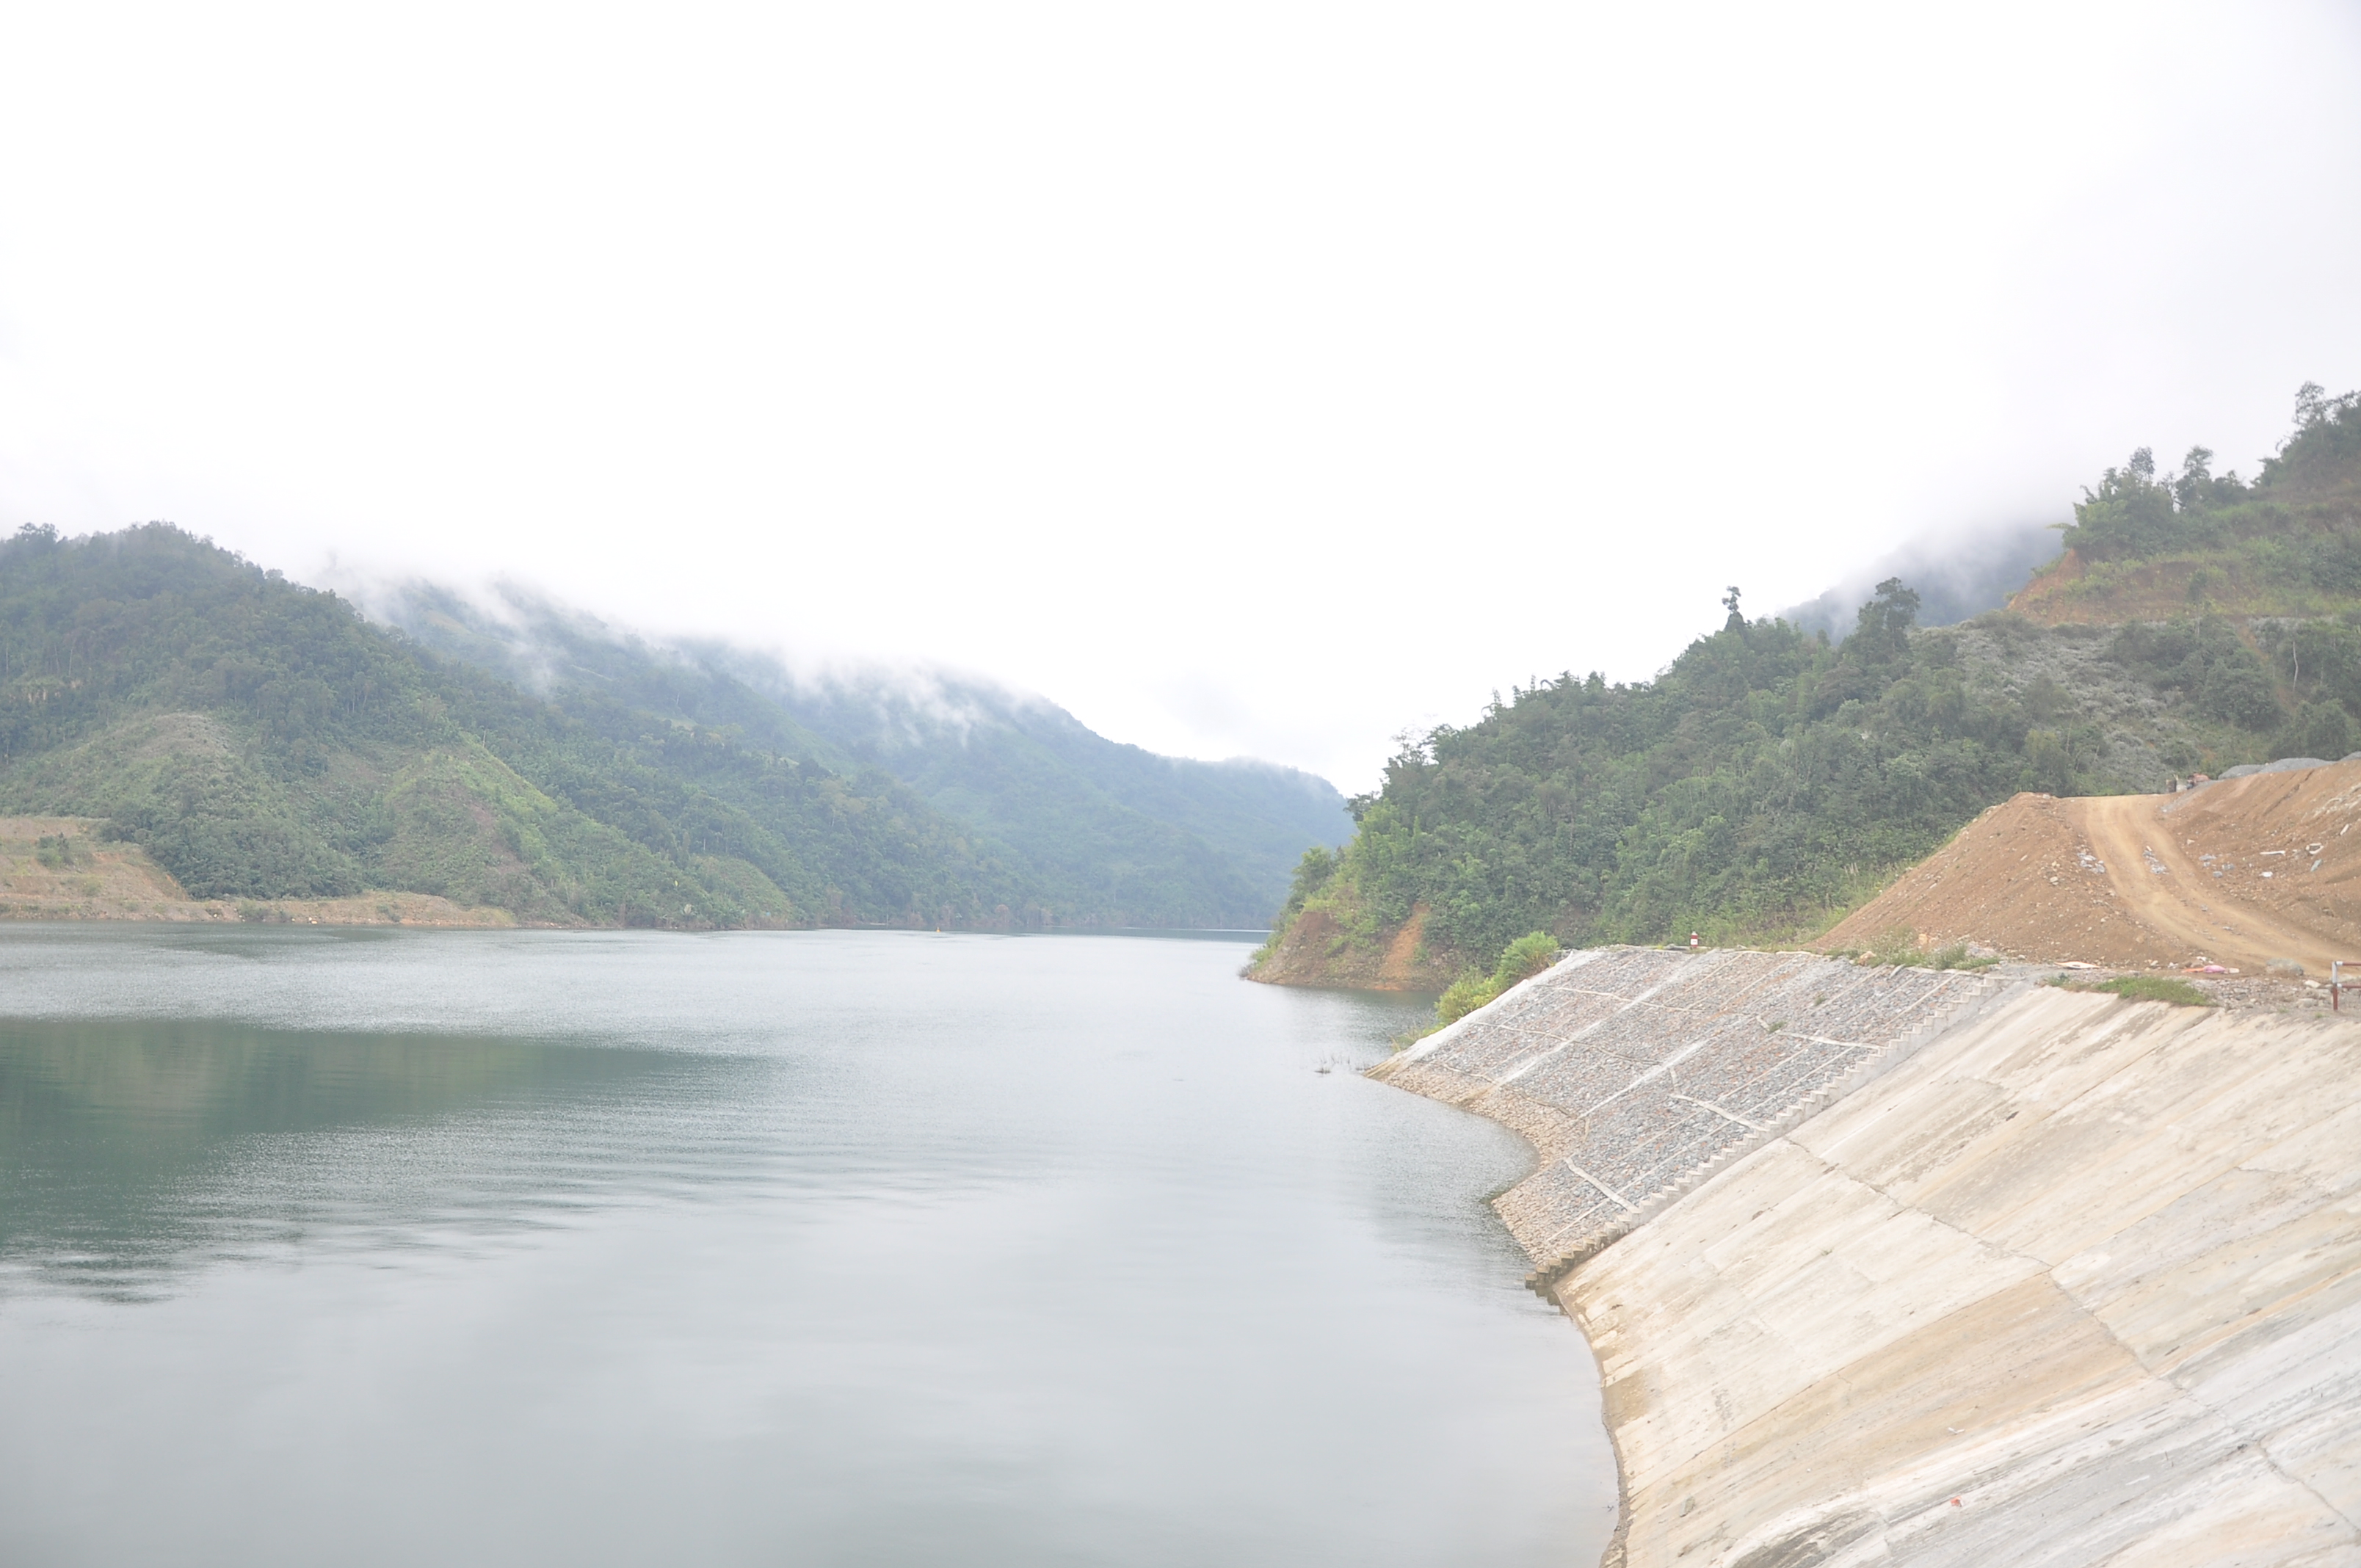 Trên vùng cao, rồi đây hồ thủy điện Lai Châu sẽ đem lại lợi ích cho người dân vùng cao bởi lòng hồ sẽ được khai thác để nuôi cá, du lịch